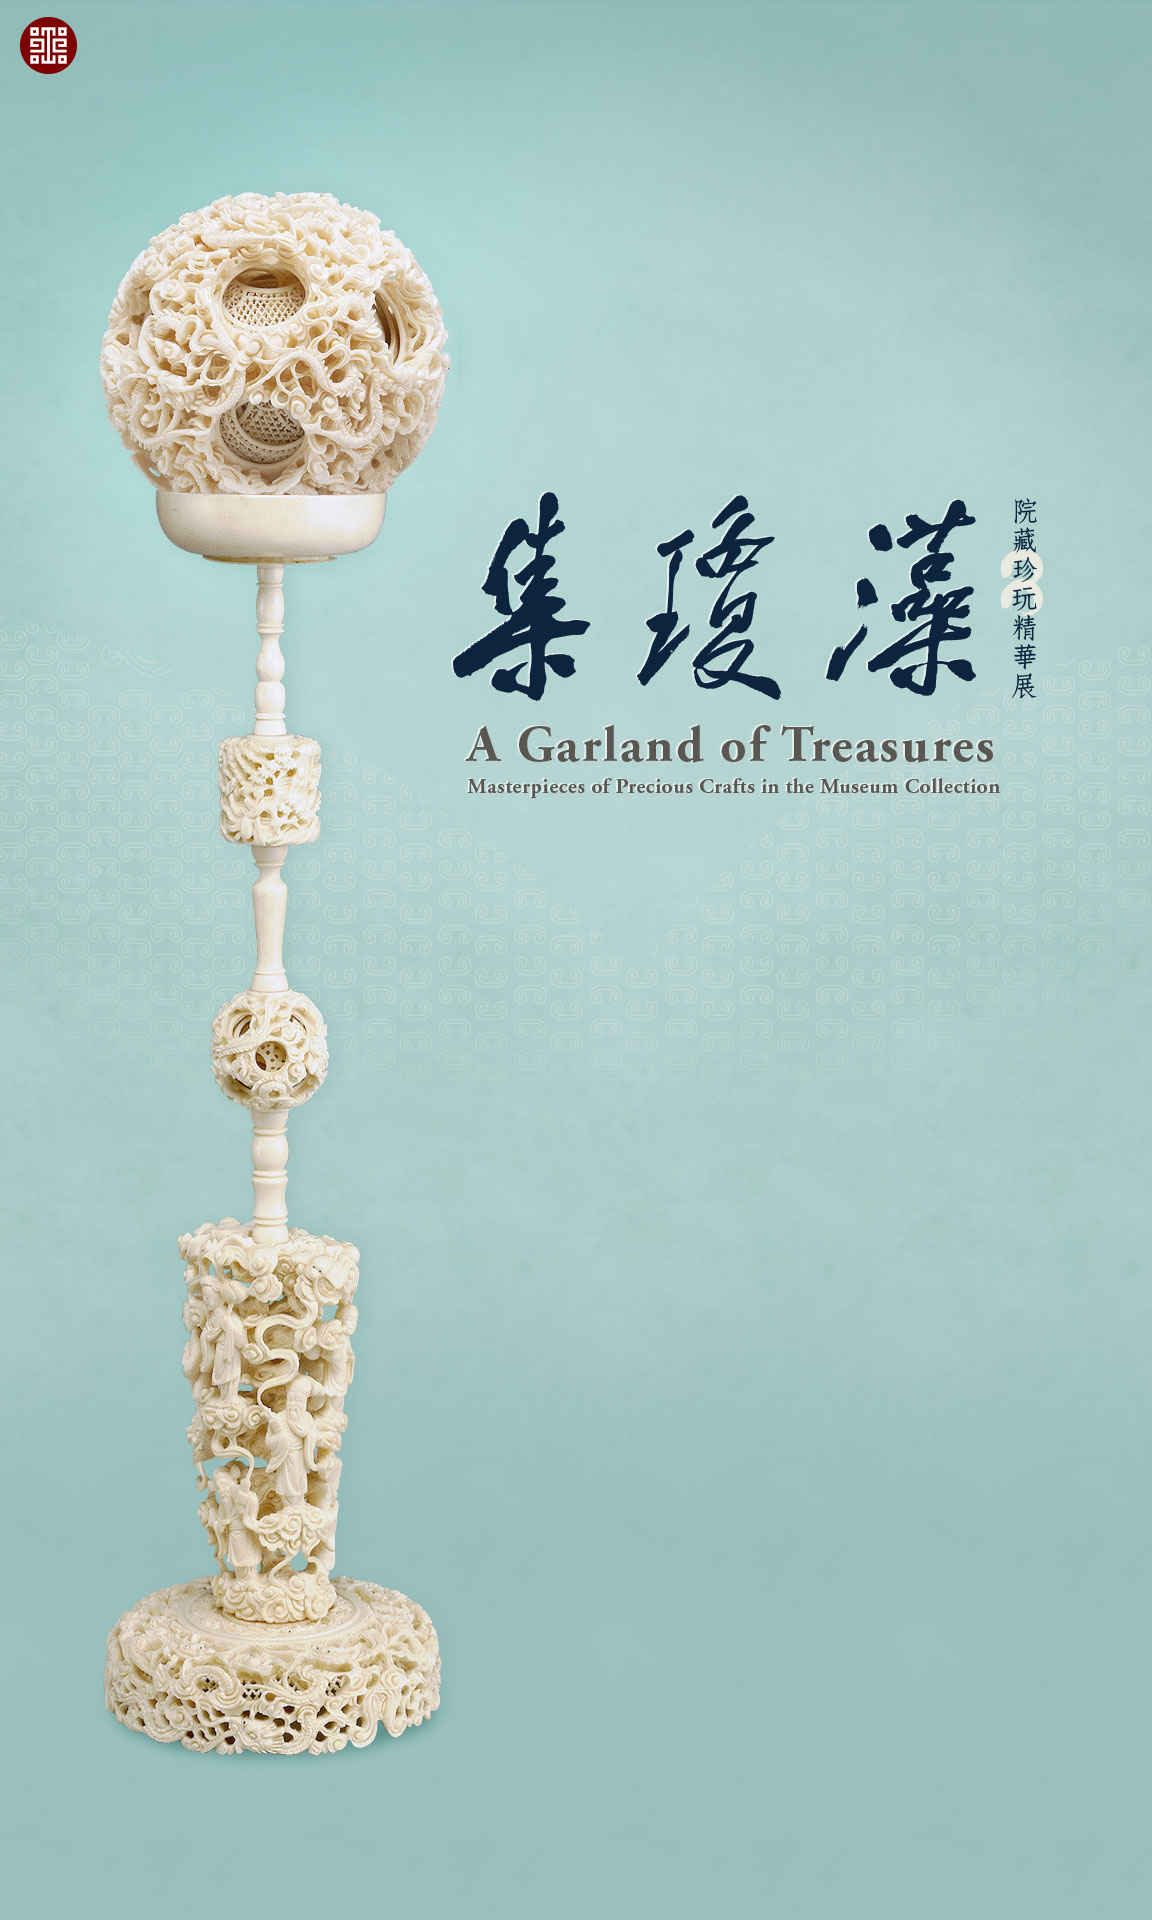 手機桌布下載：集瓊藻─院藏珍玩精華展　Cellphone photo wallpaper: A Garland of Treasures: Masterpieces of Precious Crafts in the Museum Collection (1152x1920)